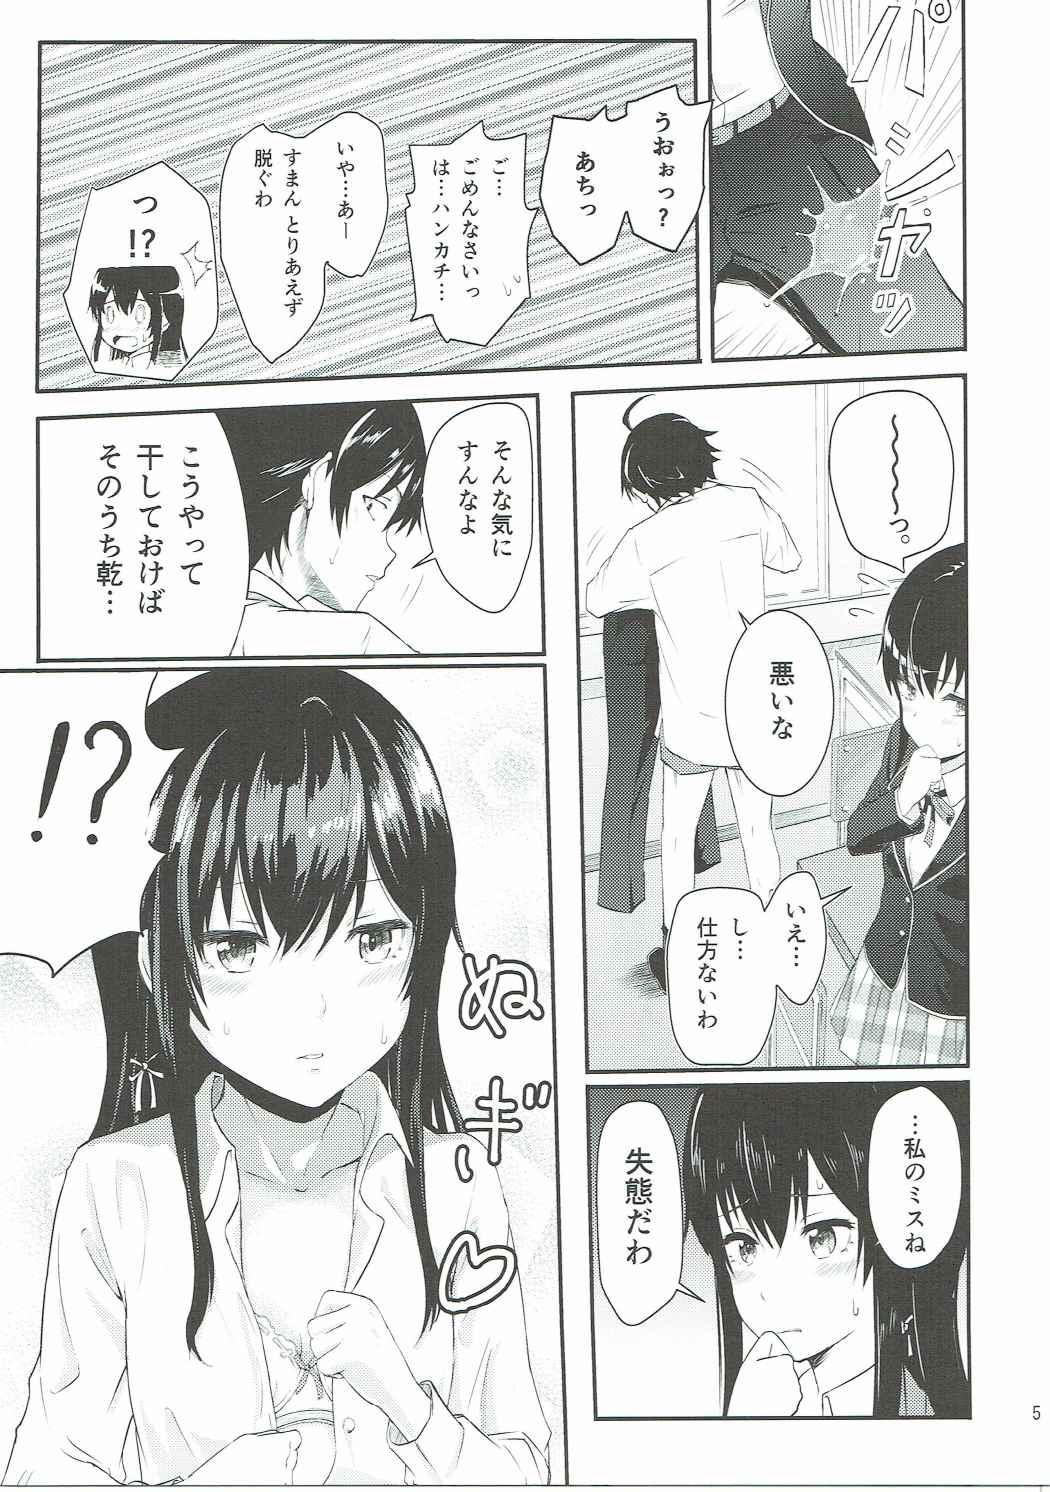 Pervert Yukino - Yahari ore no seishun love come wa machigatteiru Dildo Fucking - Page 4